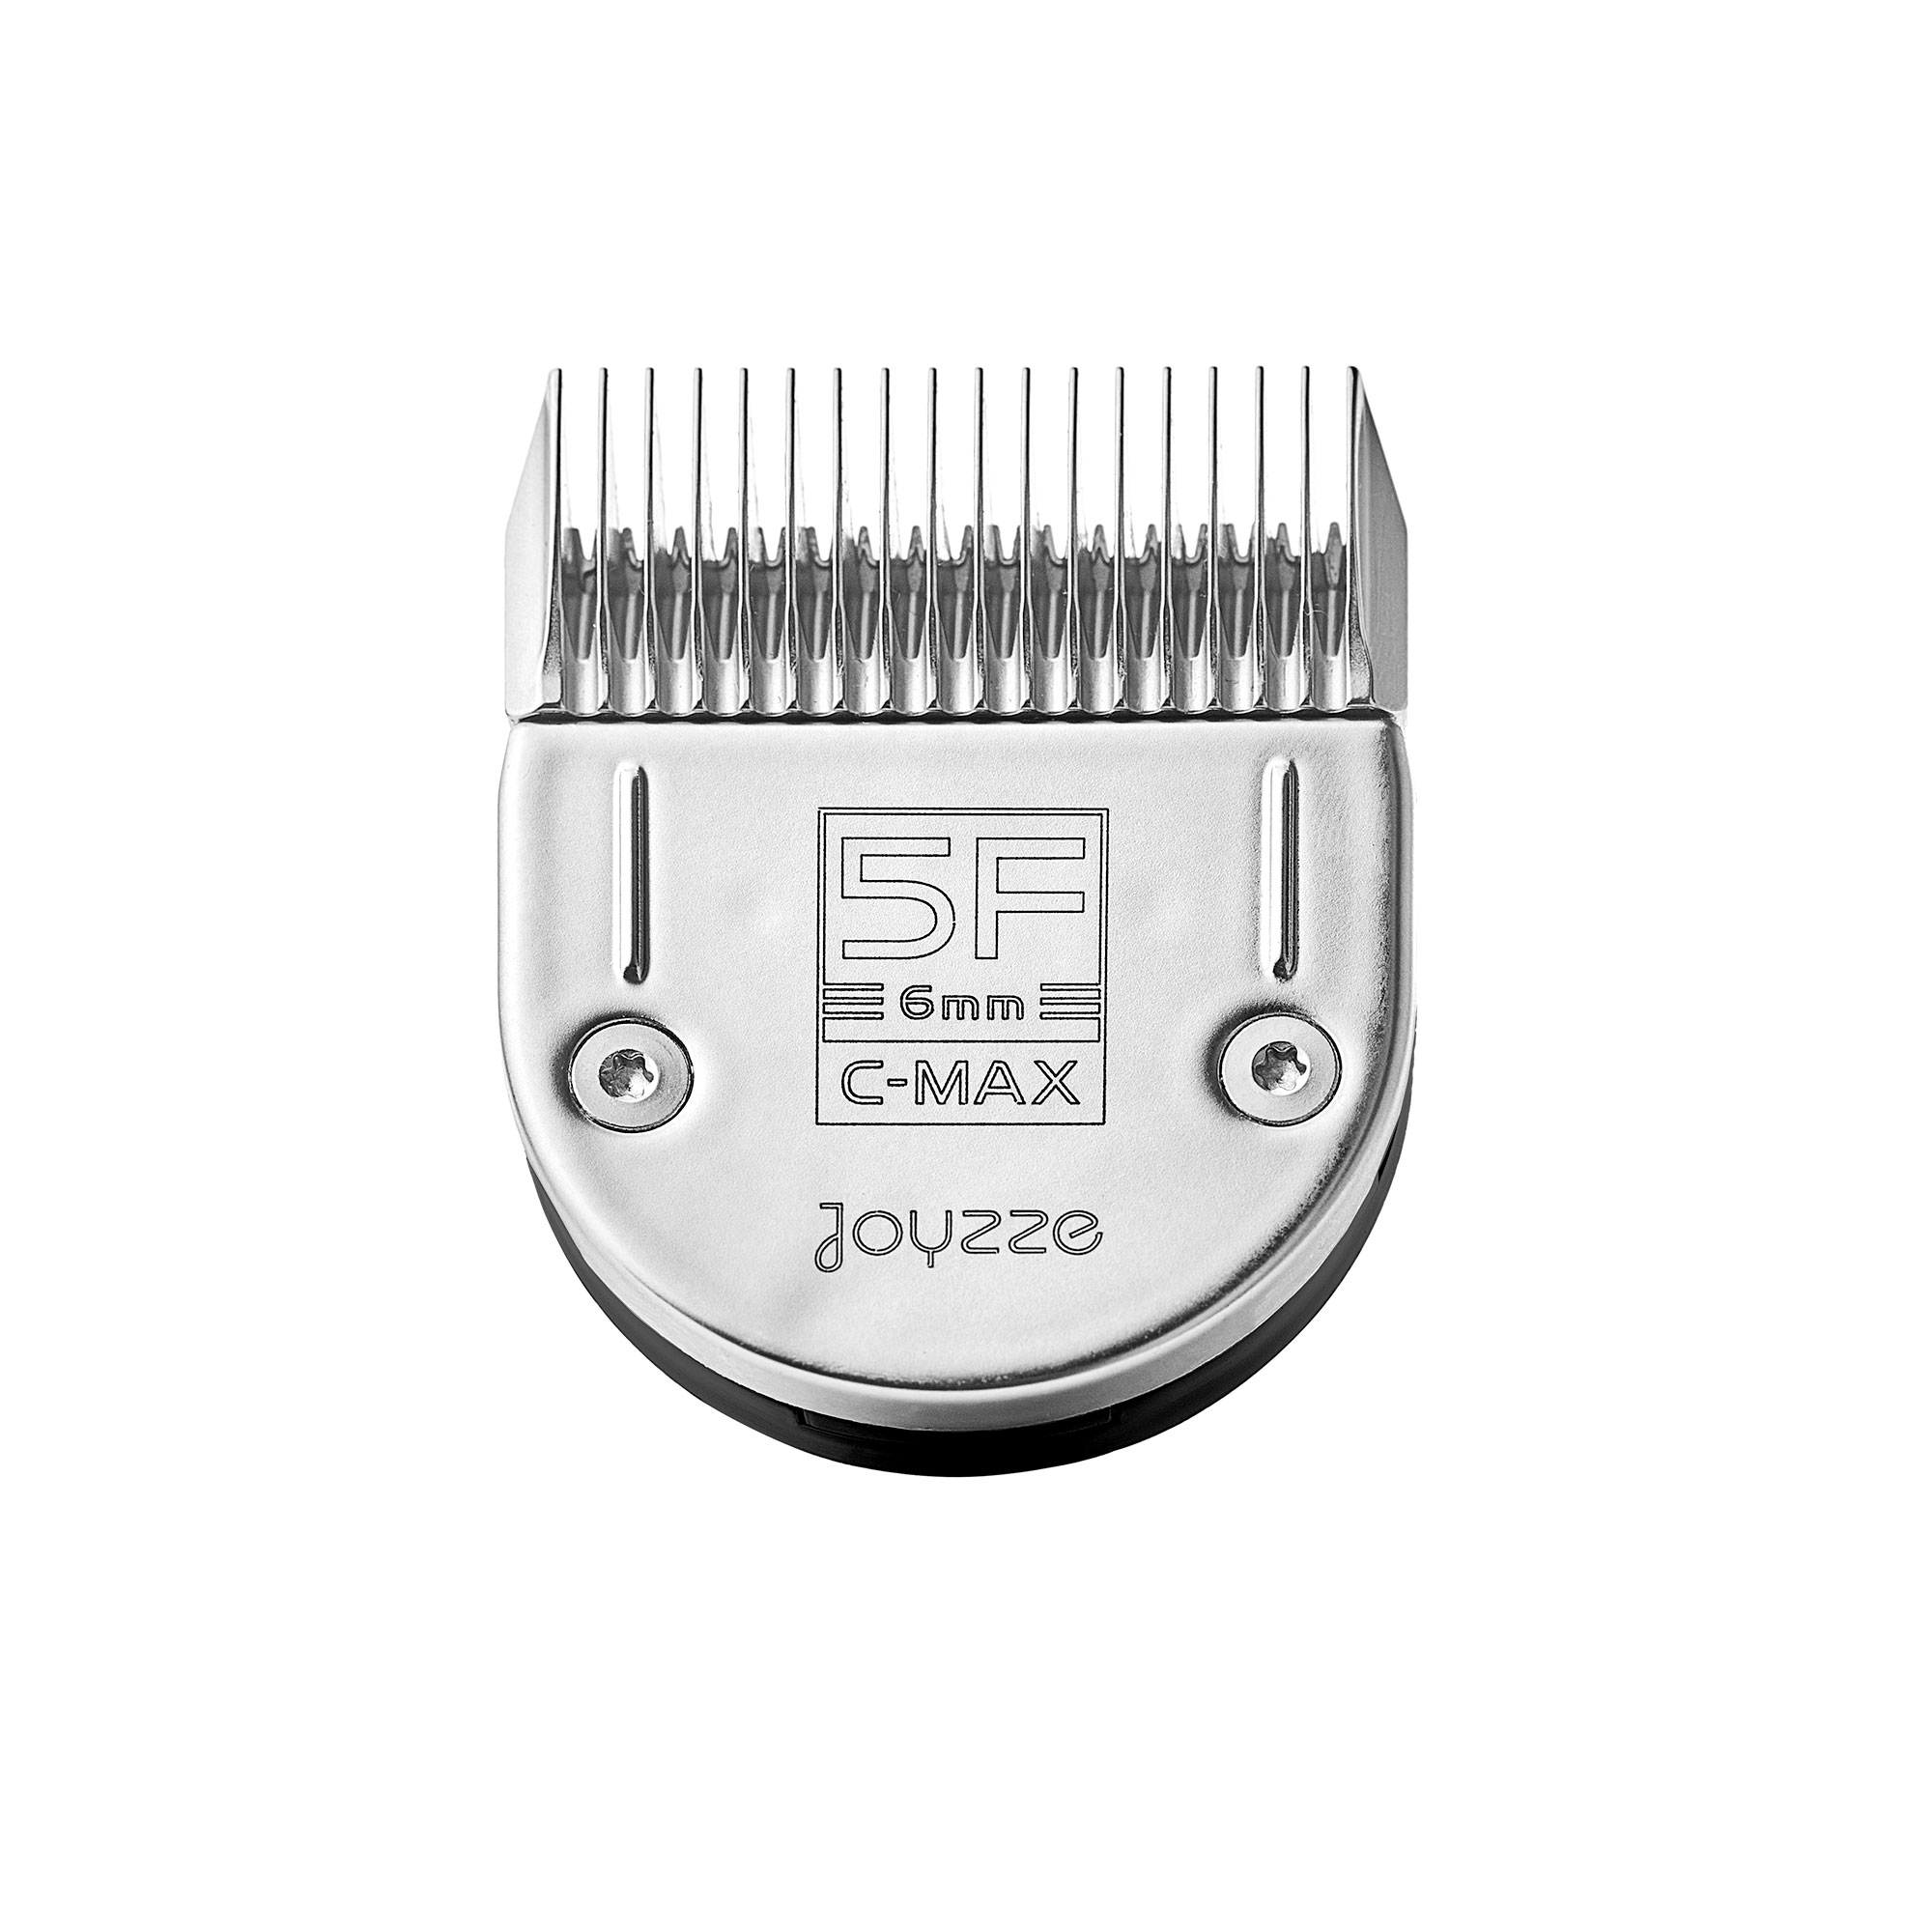 joyzze c series 5f blade for clipper